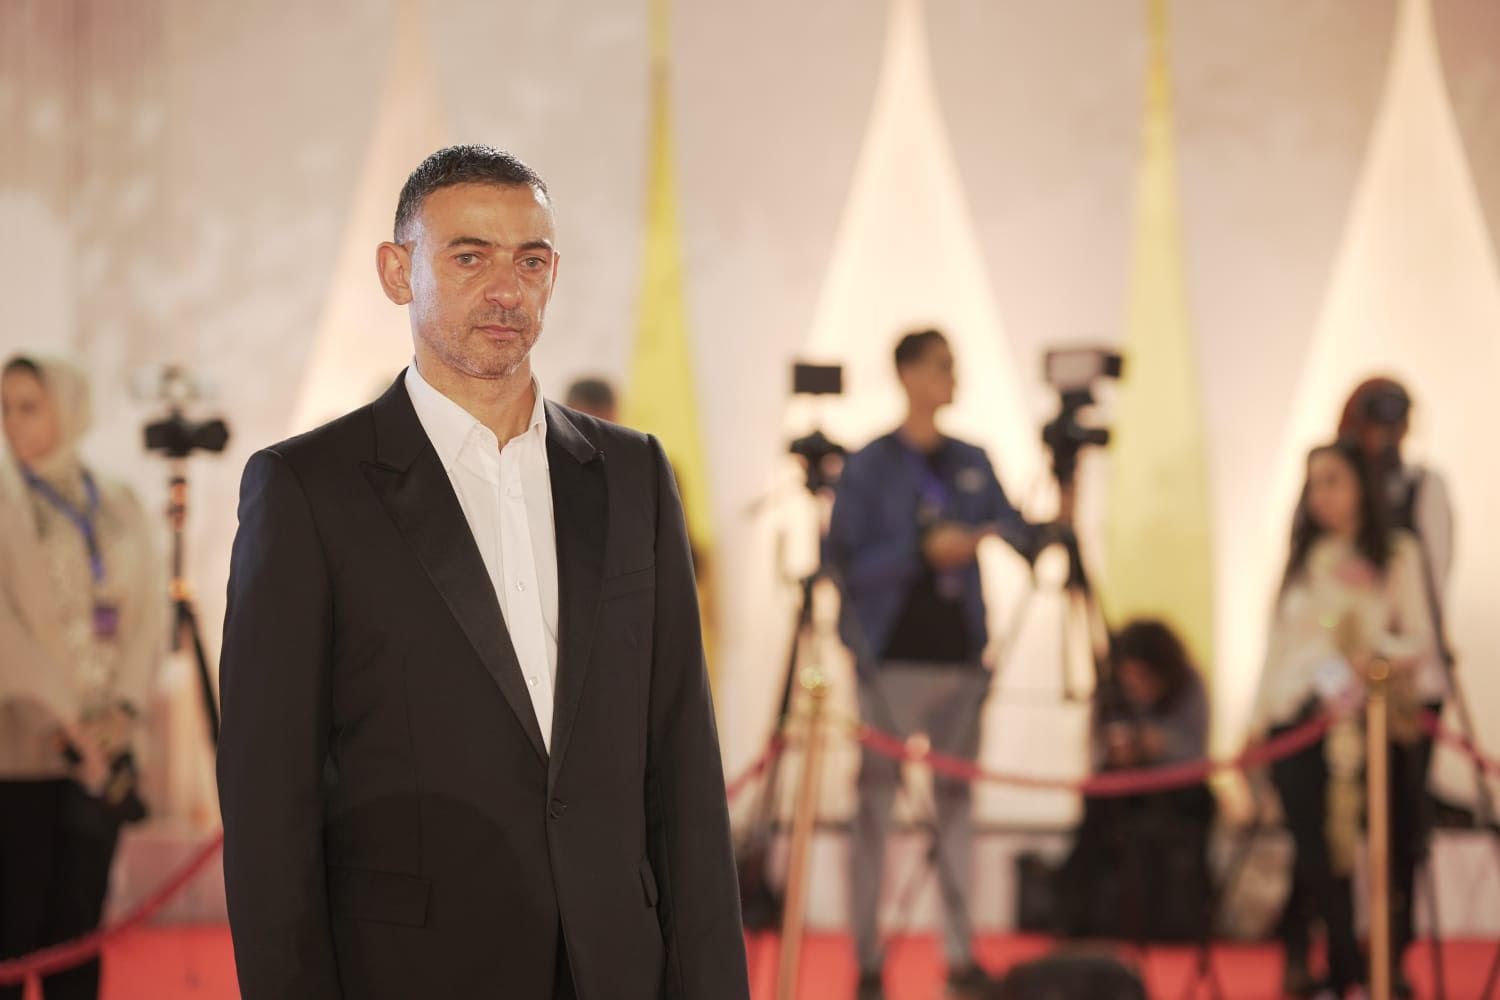 المخرج اللبناني على شيري في افتتاح مهرجان القاهرة السينمائي الدولي - الدورة 44 - 13 نوفمبر 2022 - المكتب الإعلامي لللمهرجان